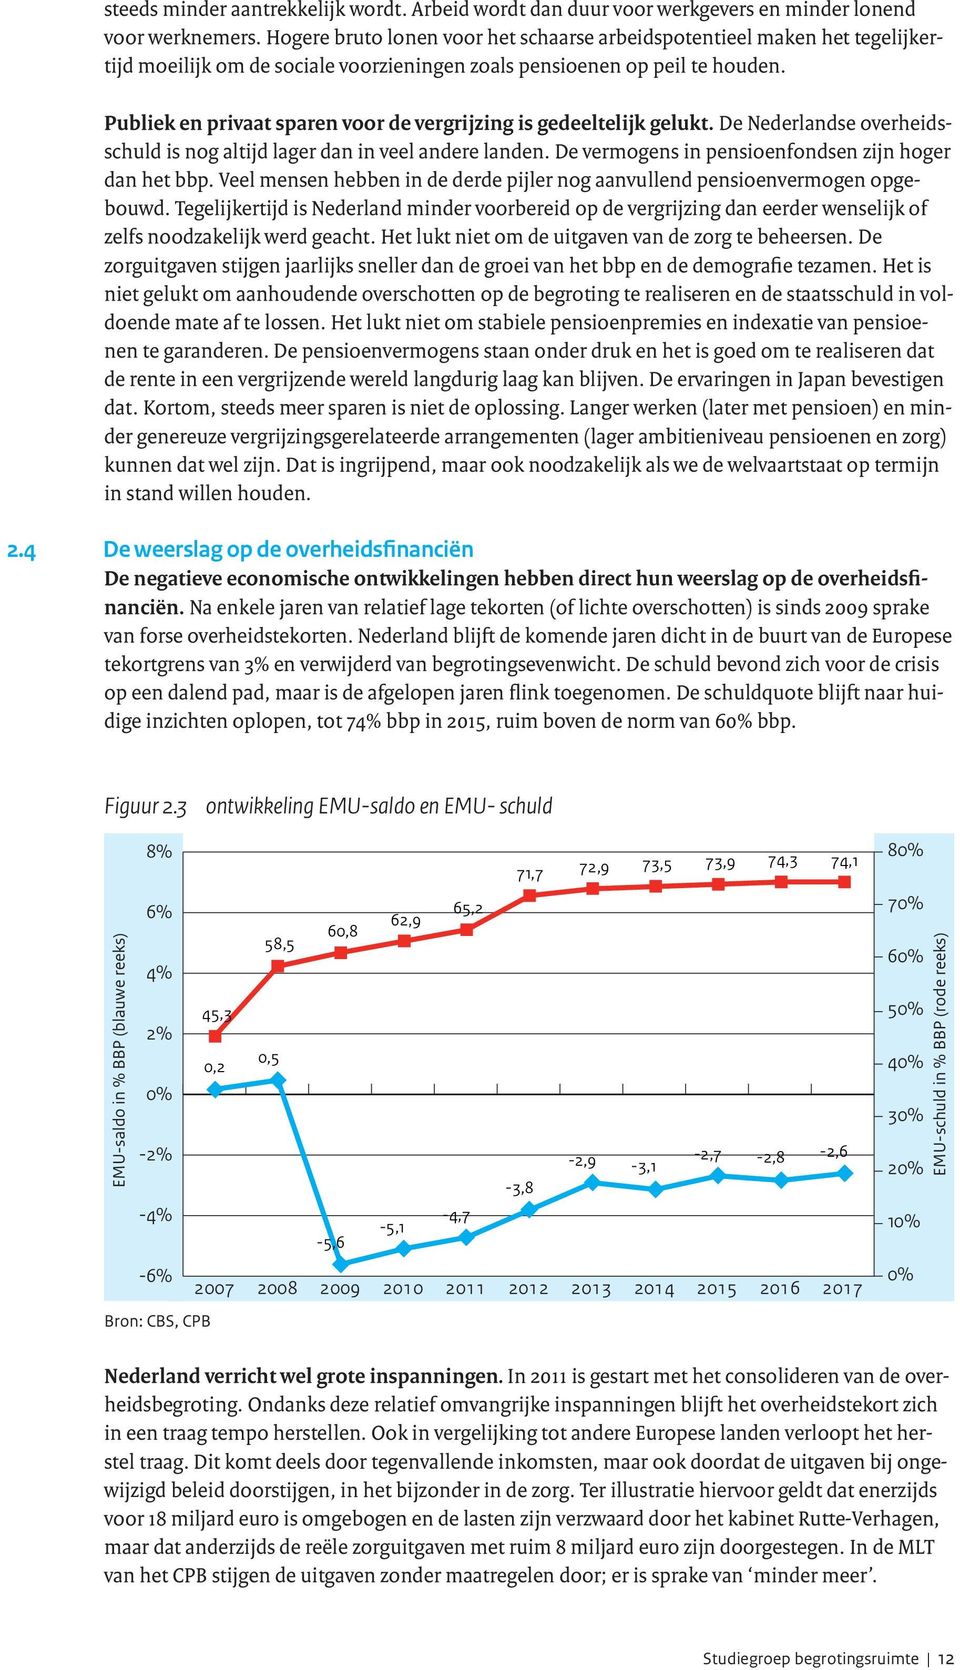 Publiek en privaat sparen voor de vergrijzing is gedeeltelijk gelukt. De Nederlandse overheidsschuld is nog altijd lager dan in veel andere landen.